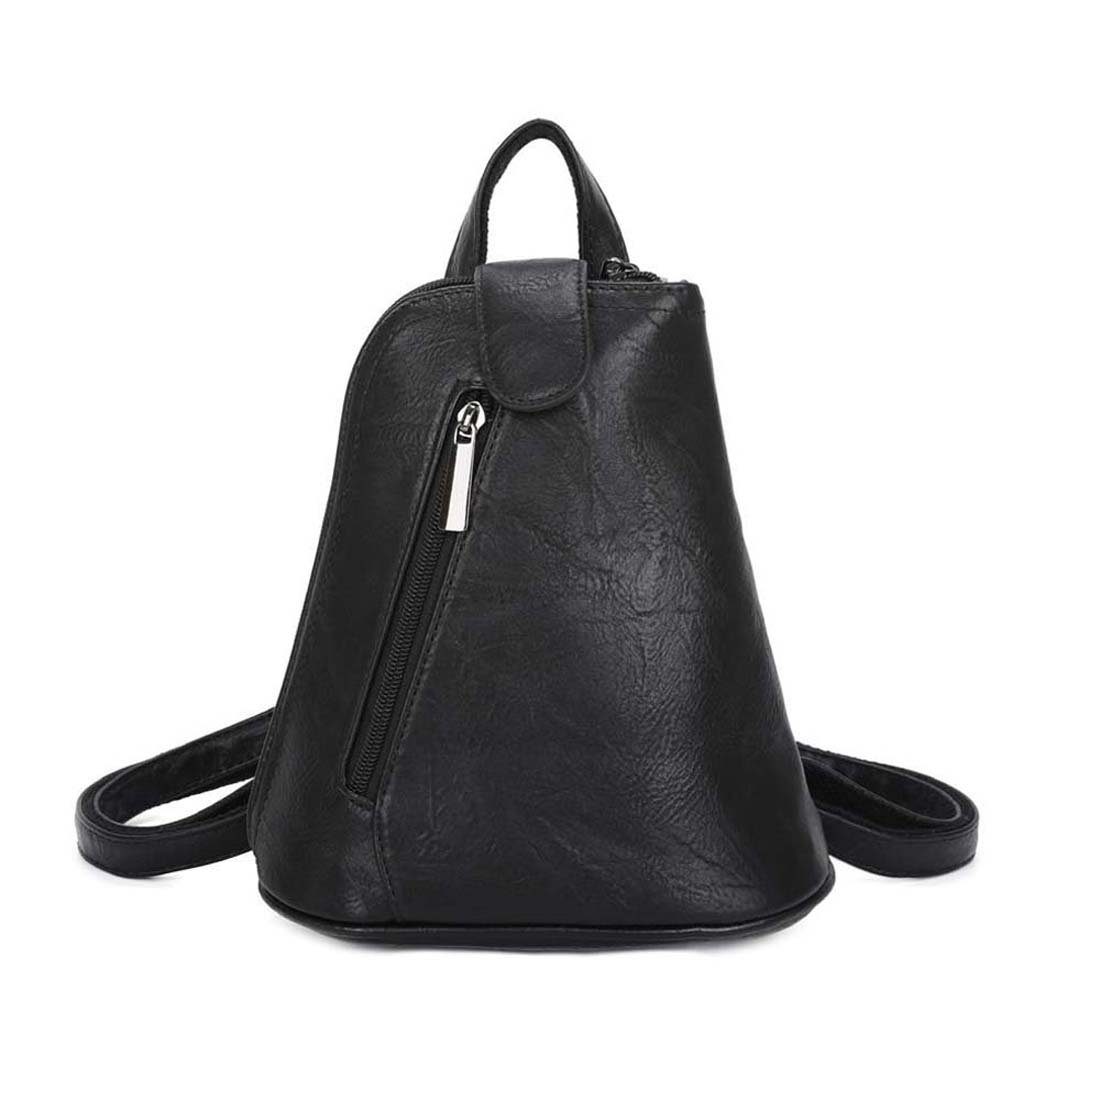 ITALYSHOP24 Rucksack Damen Crossover, kleiner Handtasche Umhängetasche tragbar Schultertasche / Schwarz Tasche Rucksack